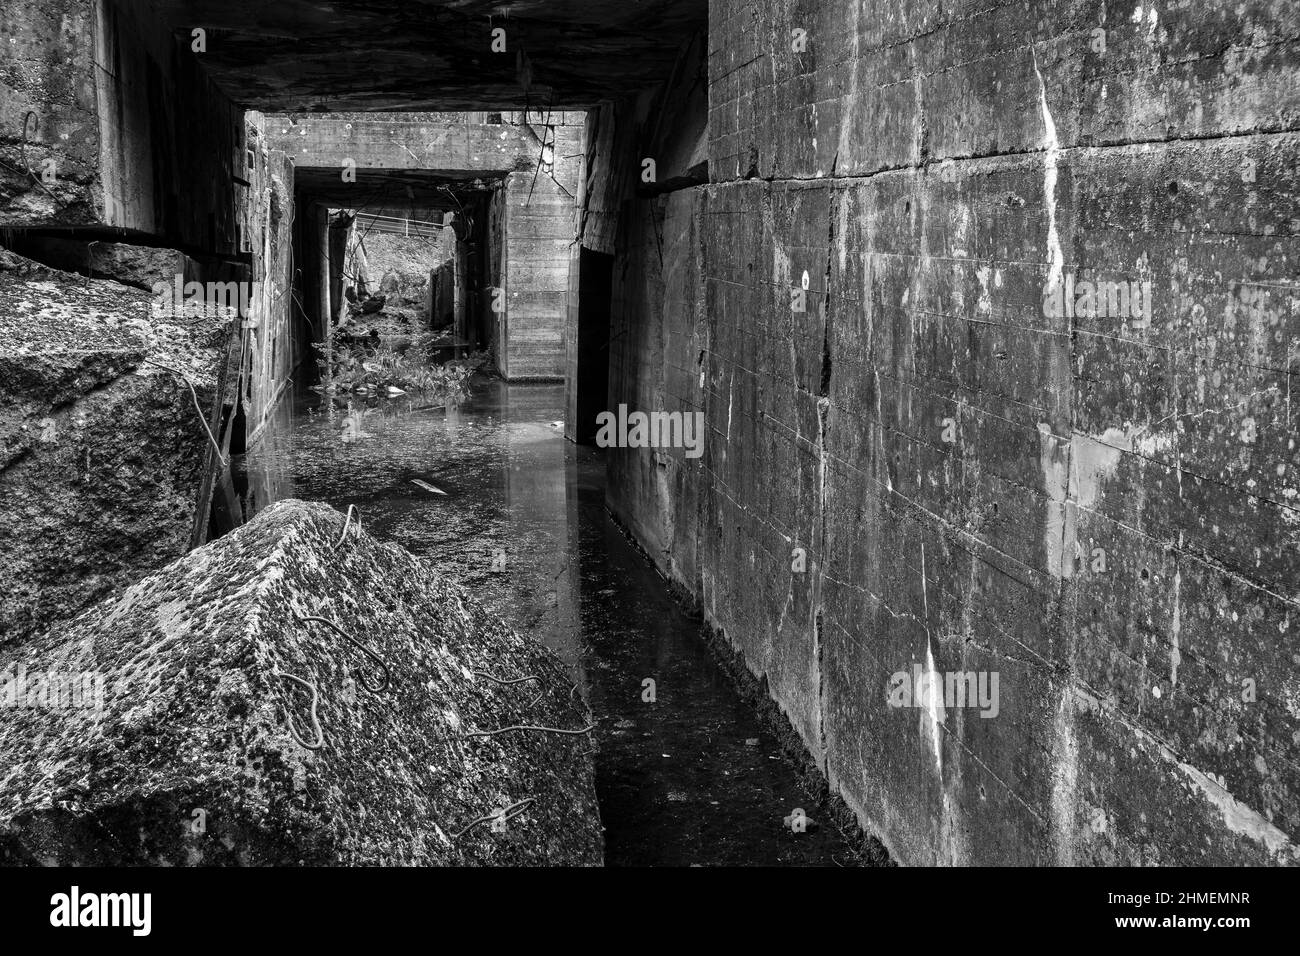 Le blockhaus allemand est une base secrete ou Hitler voulait faire monter des bombes volantes  The german bunker of Eperlecques is a secret base where Stock Photo